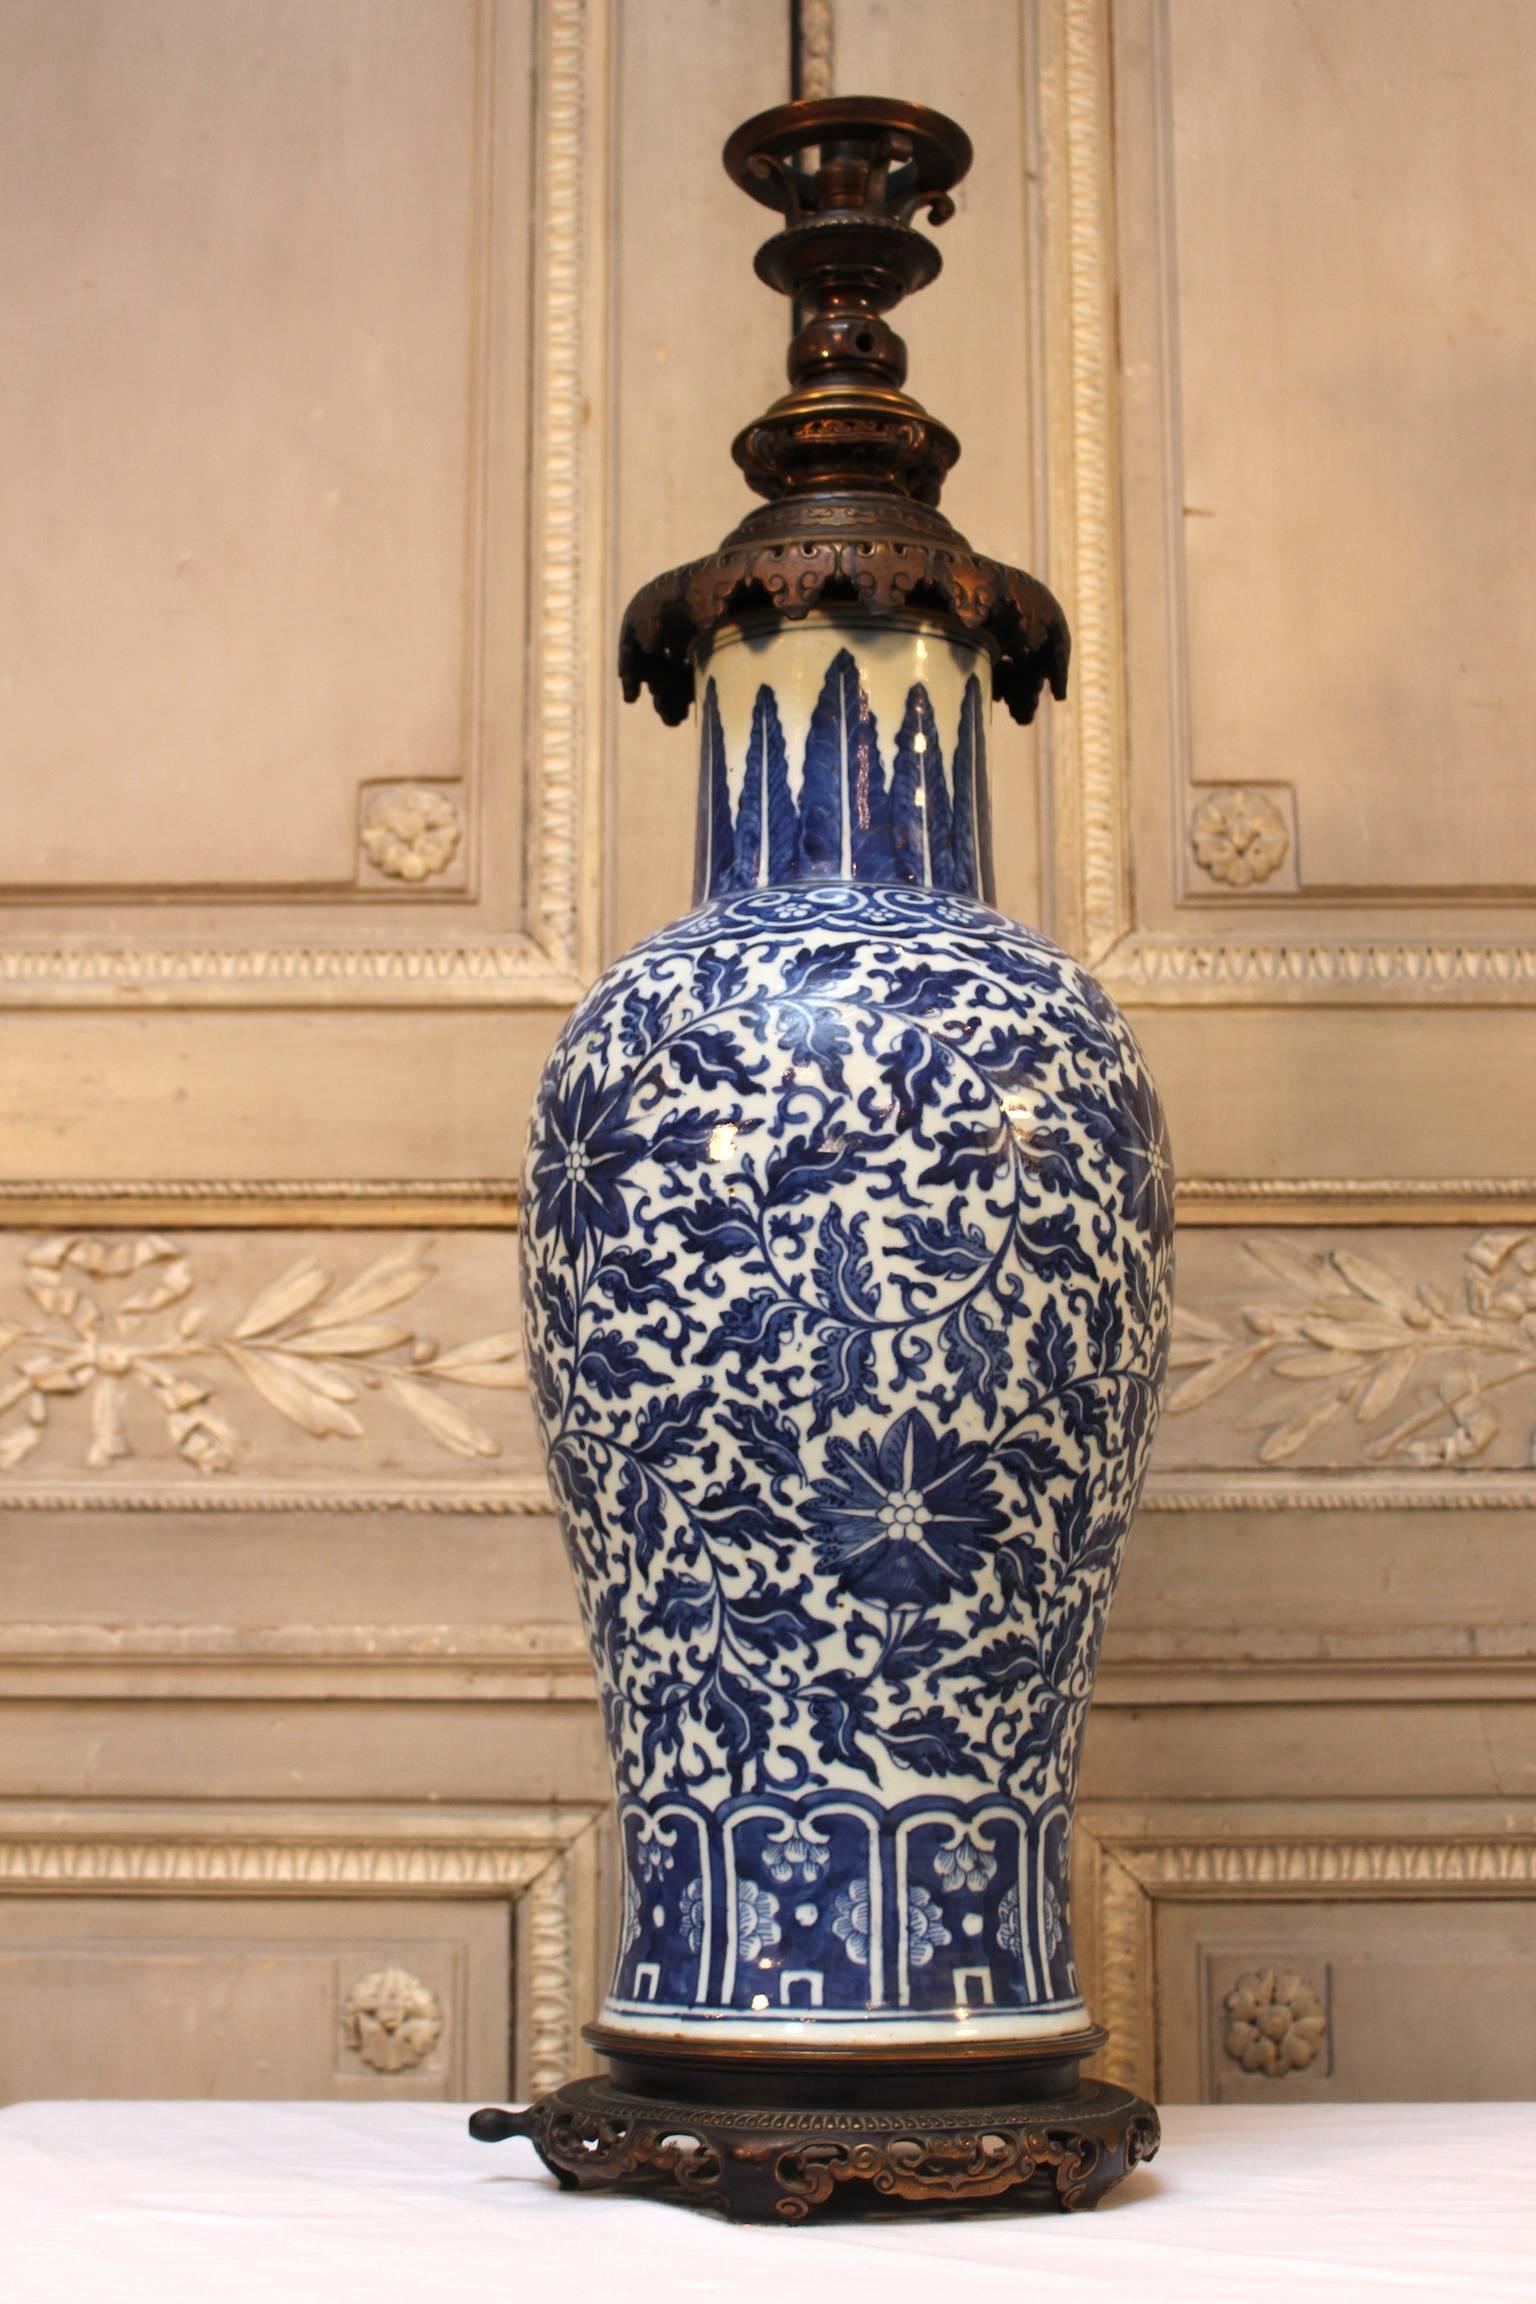 Une grande lampe en porcelaine bleue et blanche avec des montures en bronze.